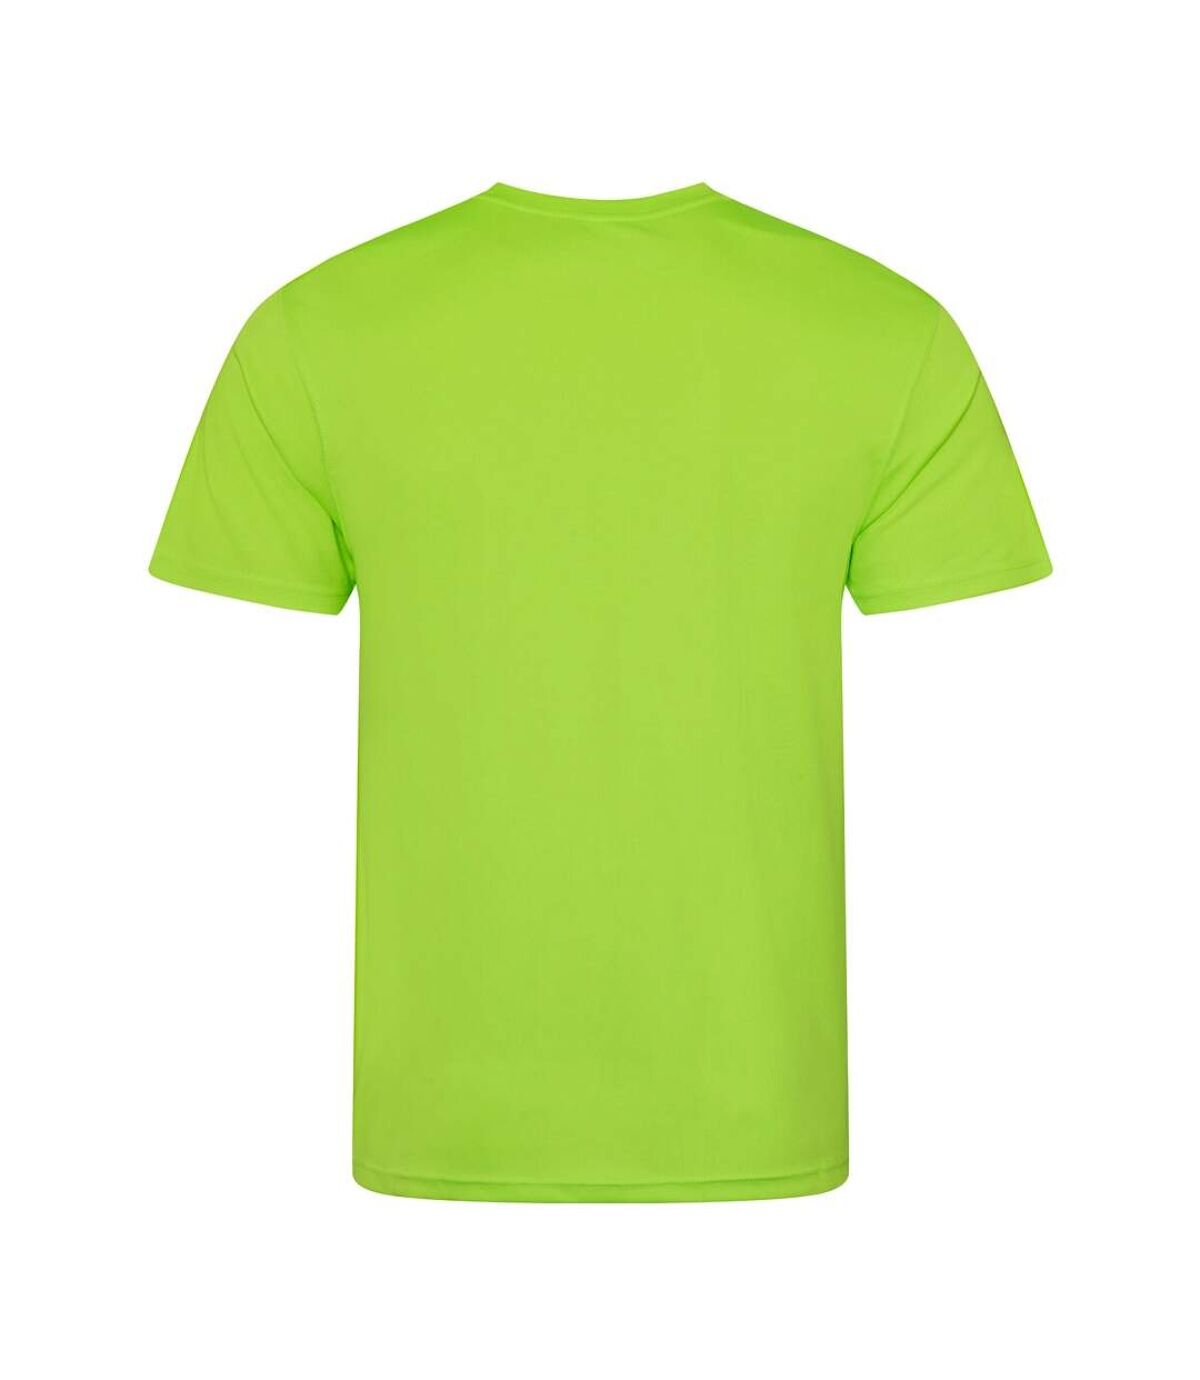 AWDis - T-shirt performance - Homme (Vert électrique) - UTRW683